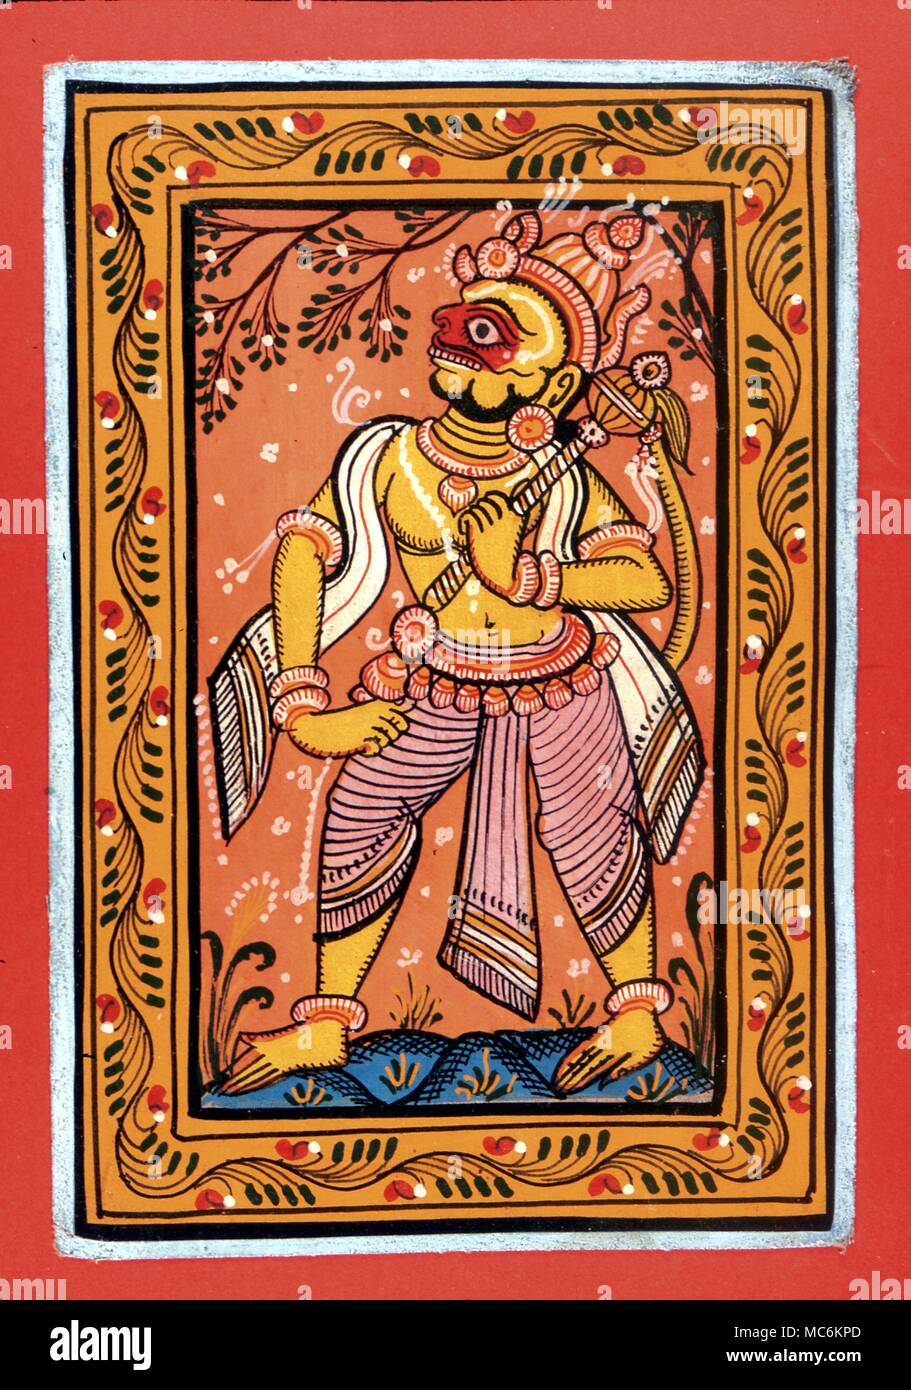 La mitología hindú. Moderna (mediados de siglo) Aguada del dios hindú, Hanuman, el rey mono del Ramayana Foto de stock